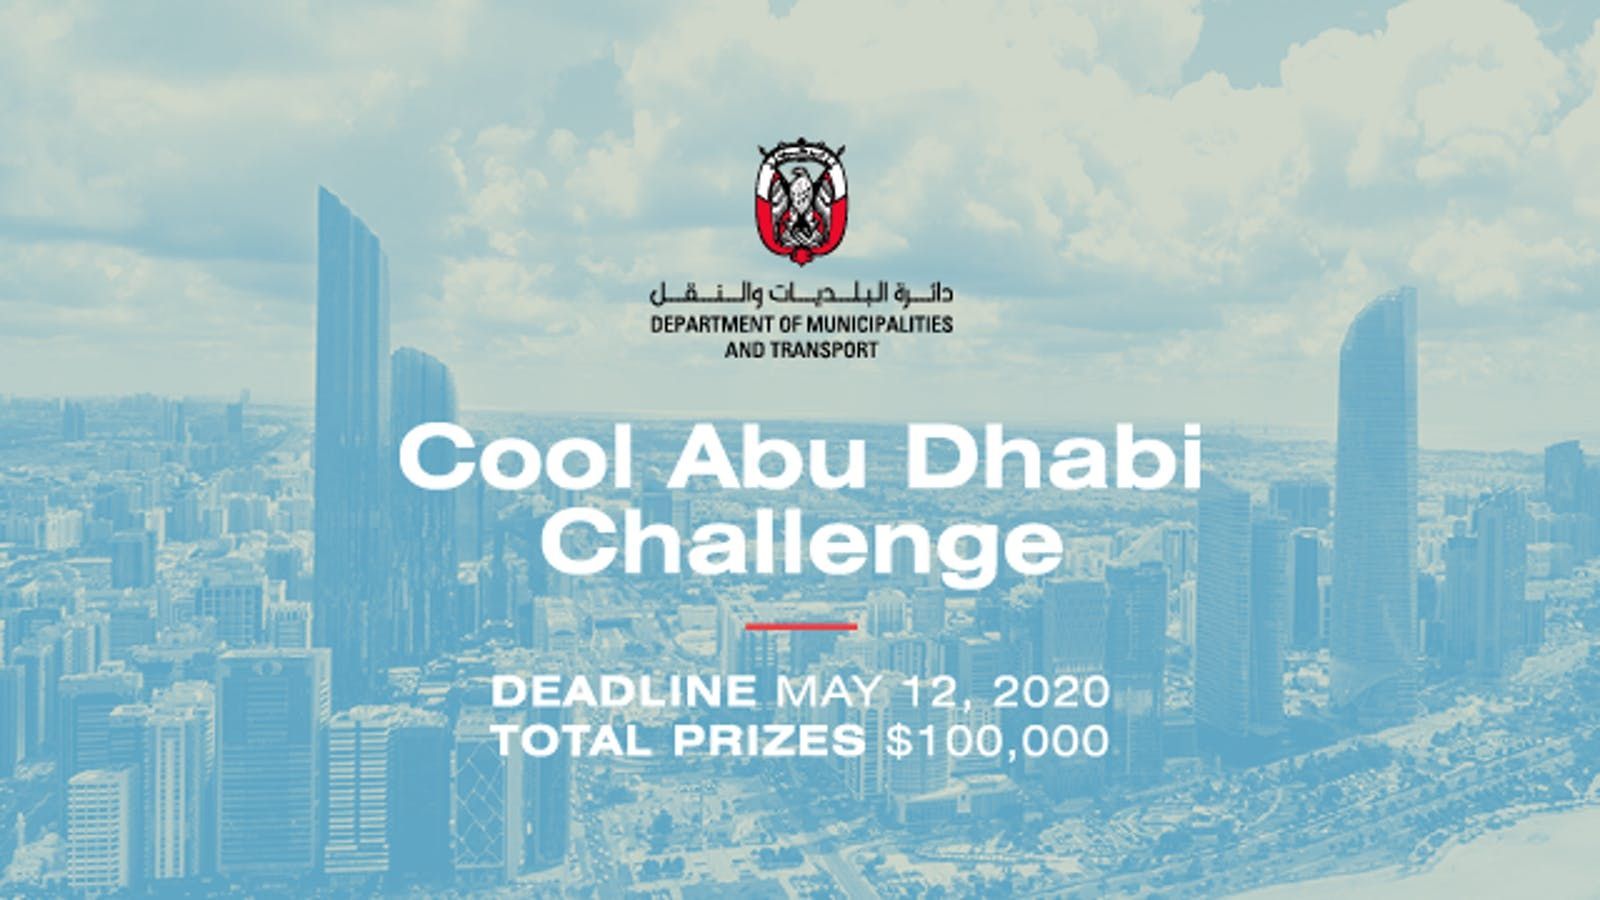 Cool Abu Dhabi Challenge 2020 (Total prize of $100,000)